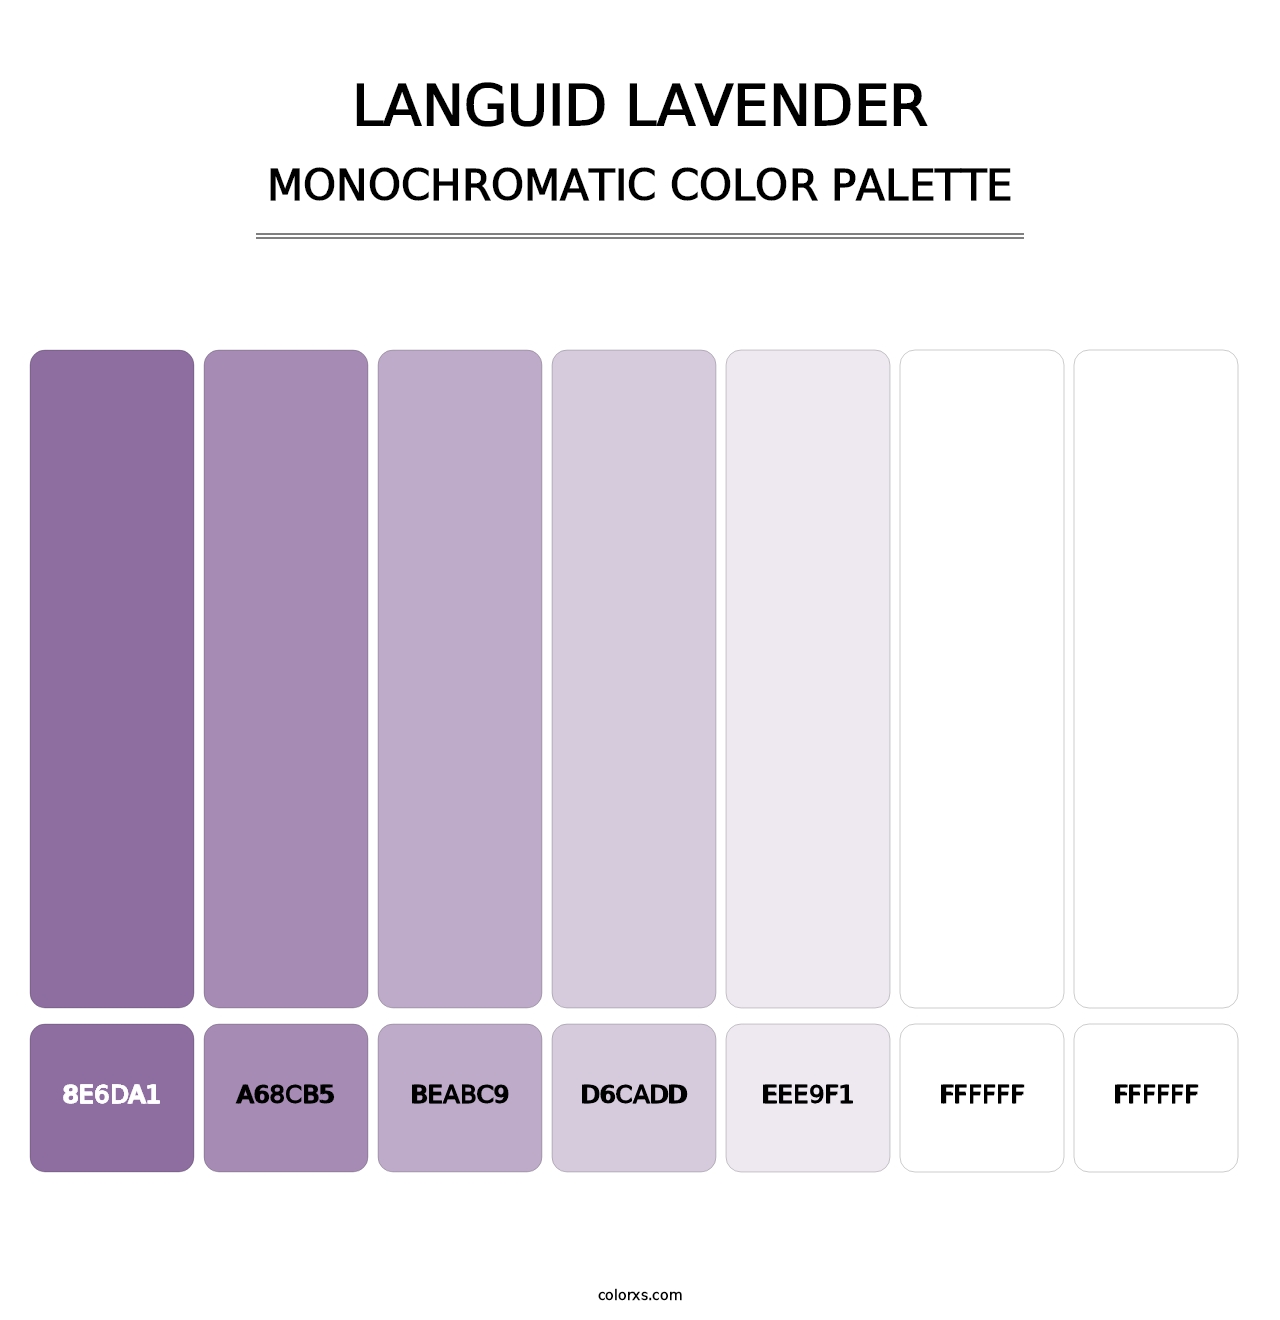 Languid Lavender - Monochromatic Color Palette